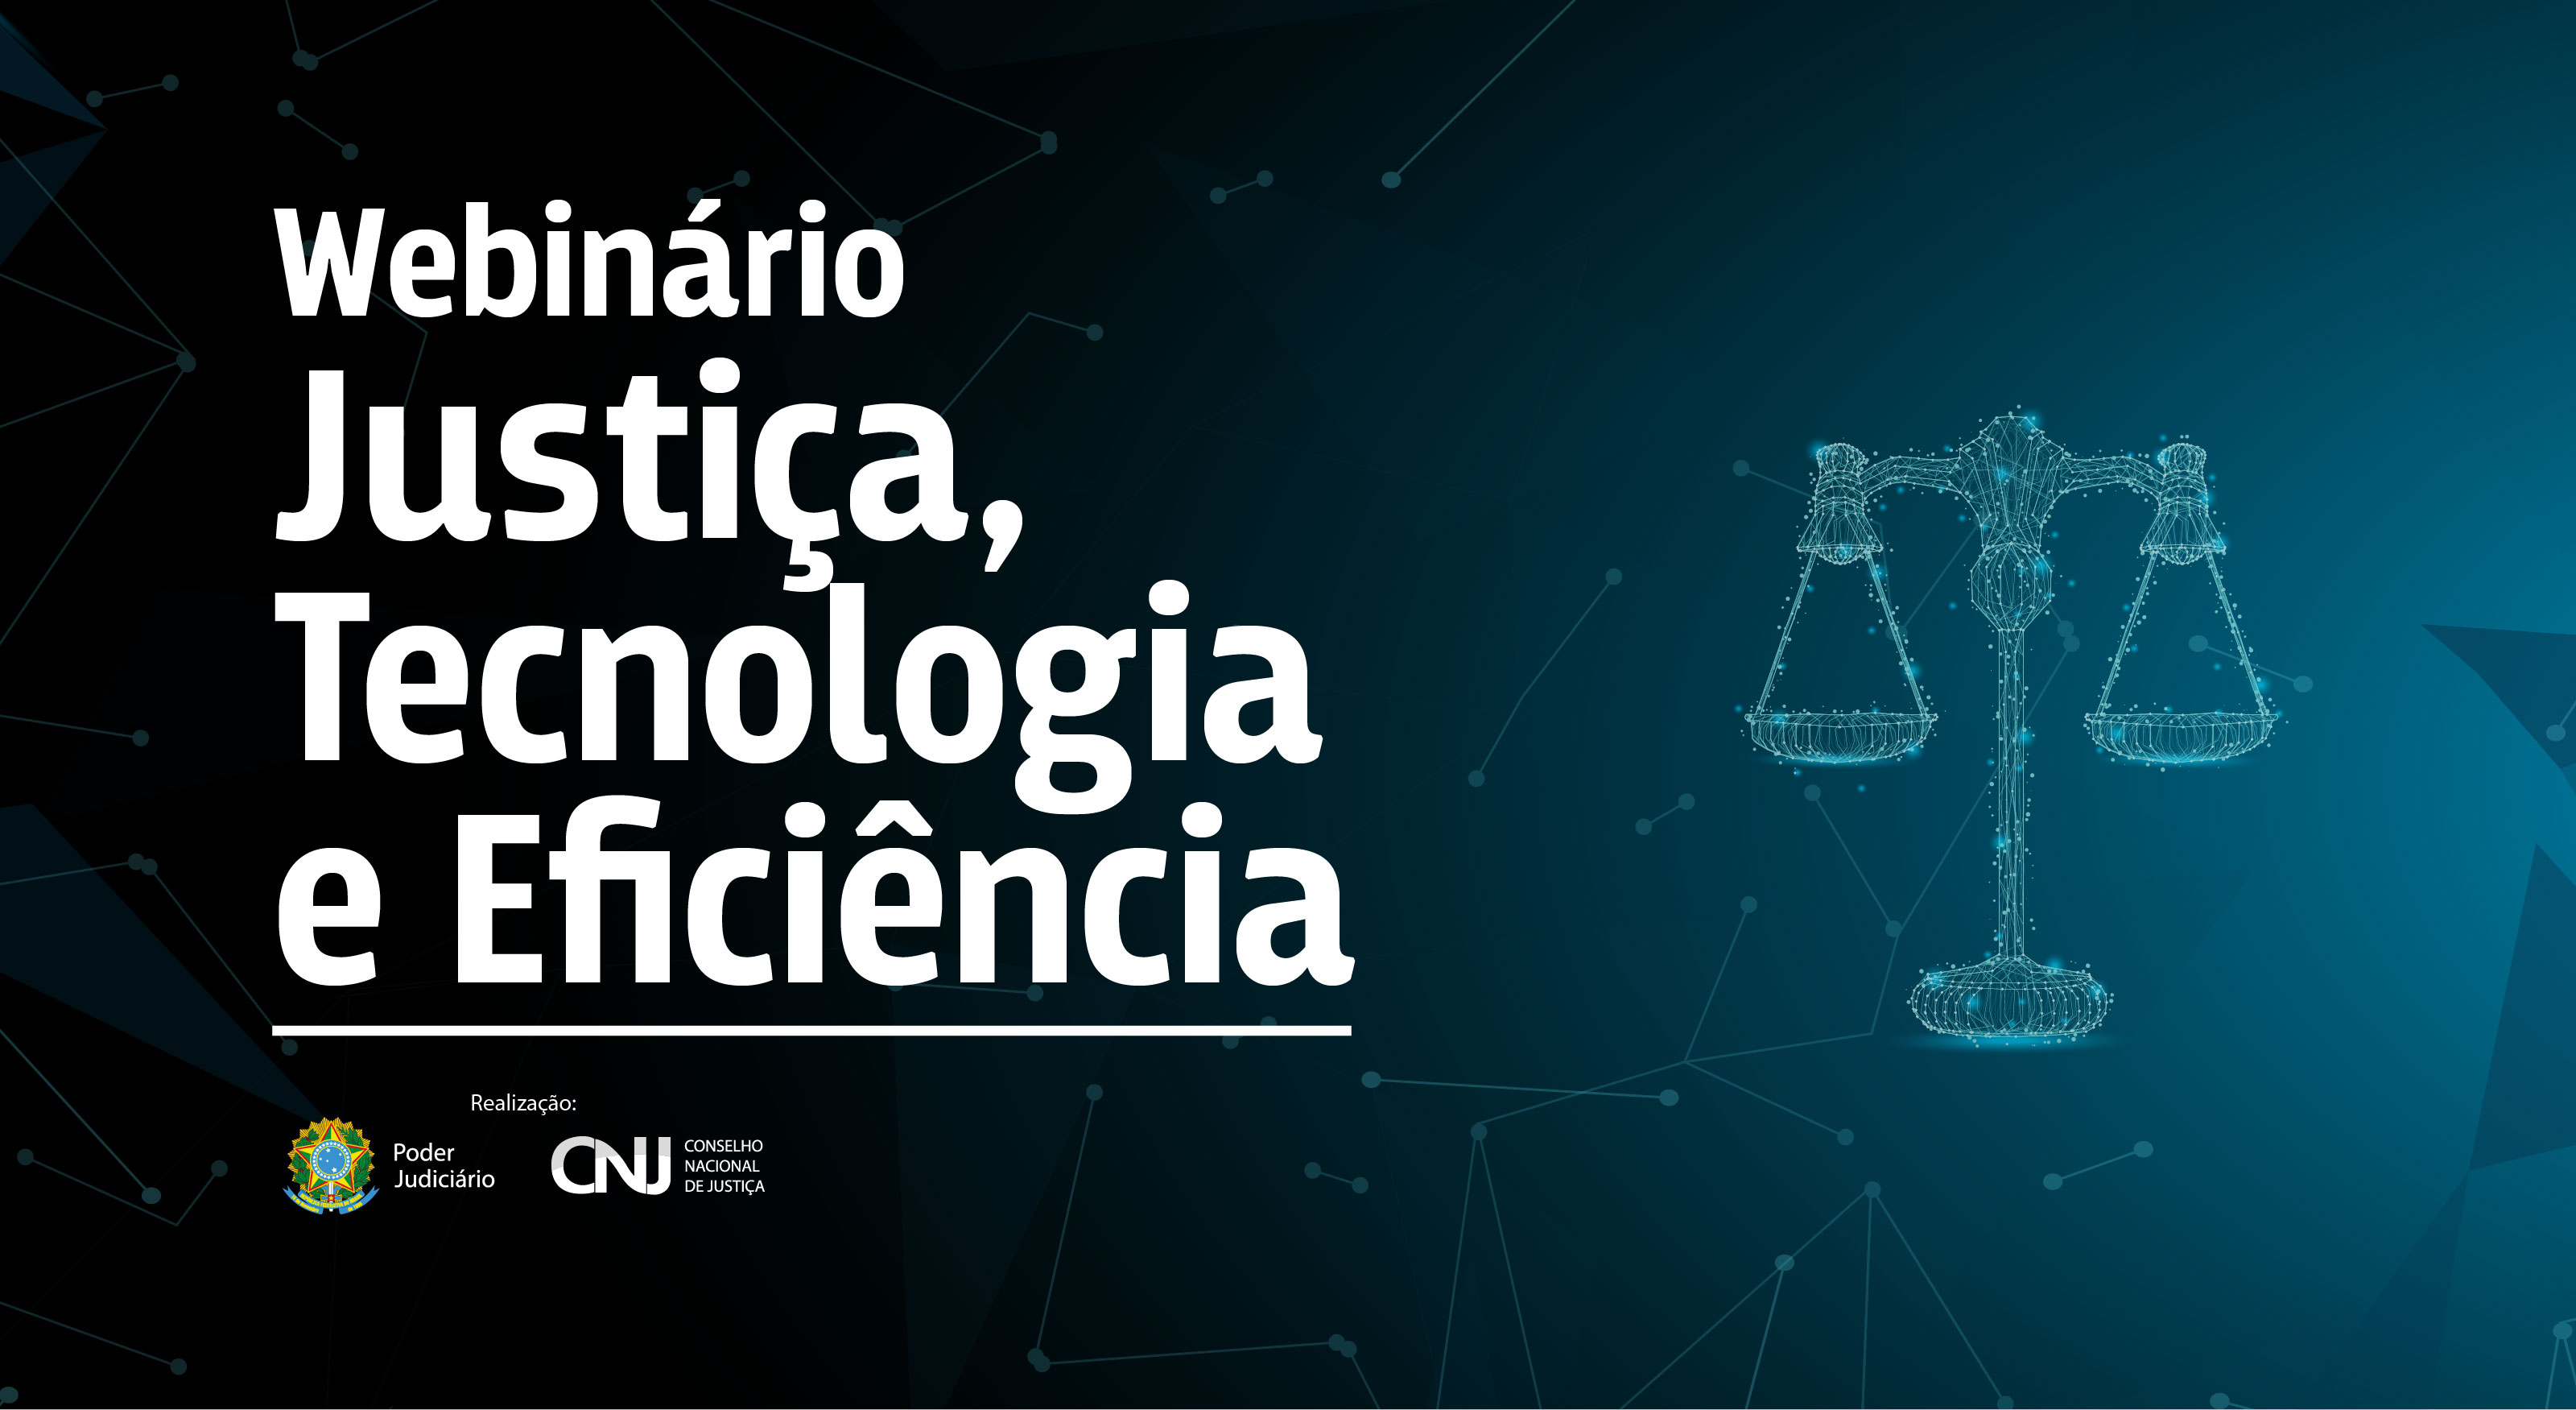 INSTITUCIONAL: Webinário Justiça, Tecnologia e Eficiência do CNJ acontece nesta quinta-feira (24)